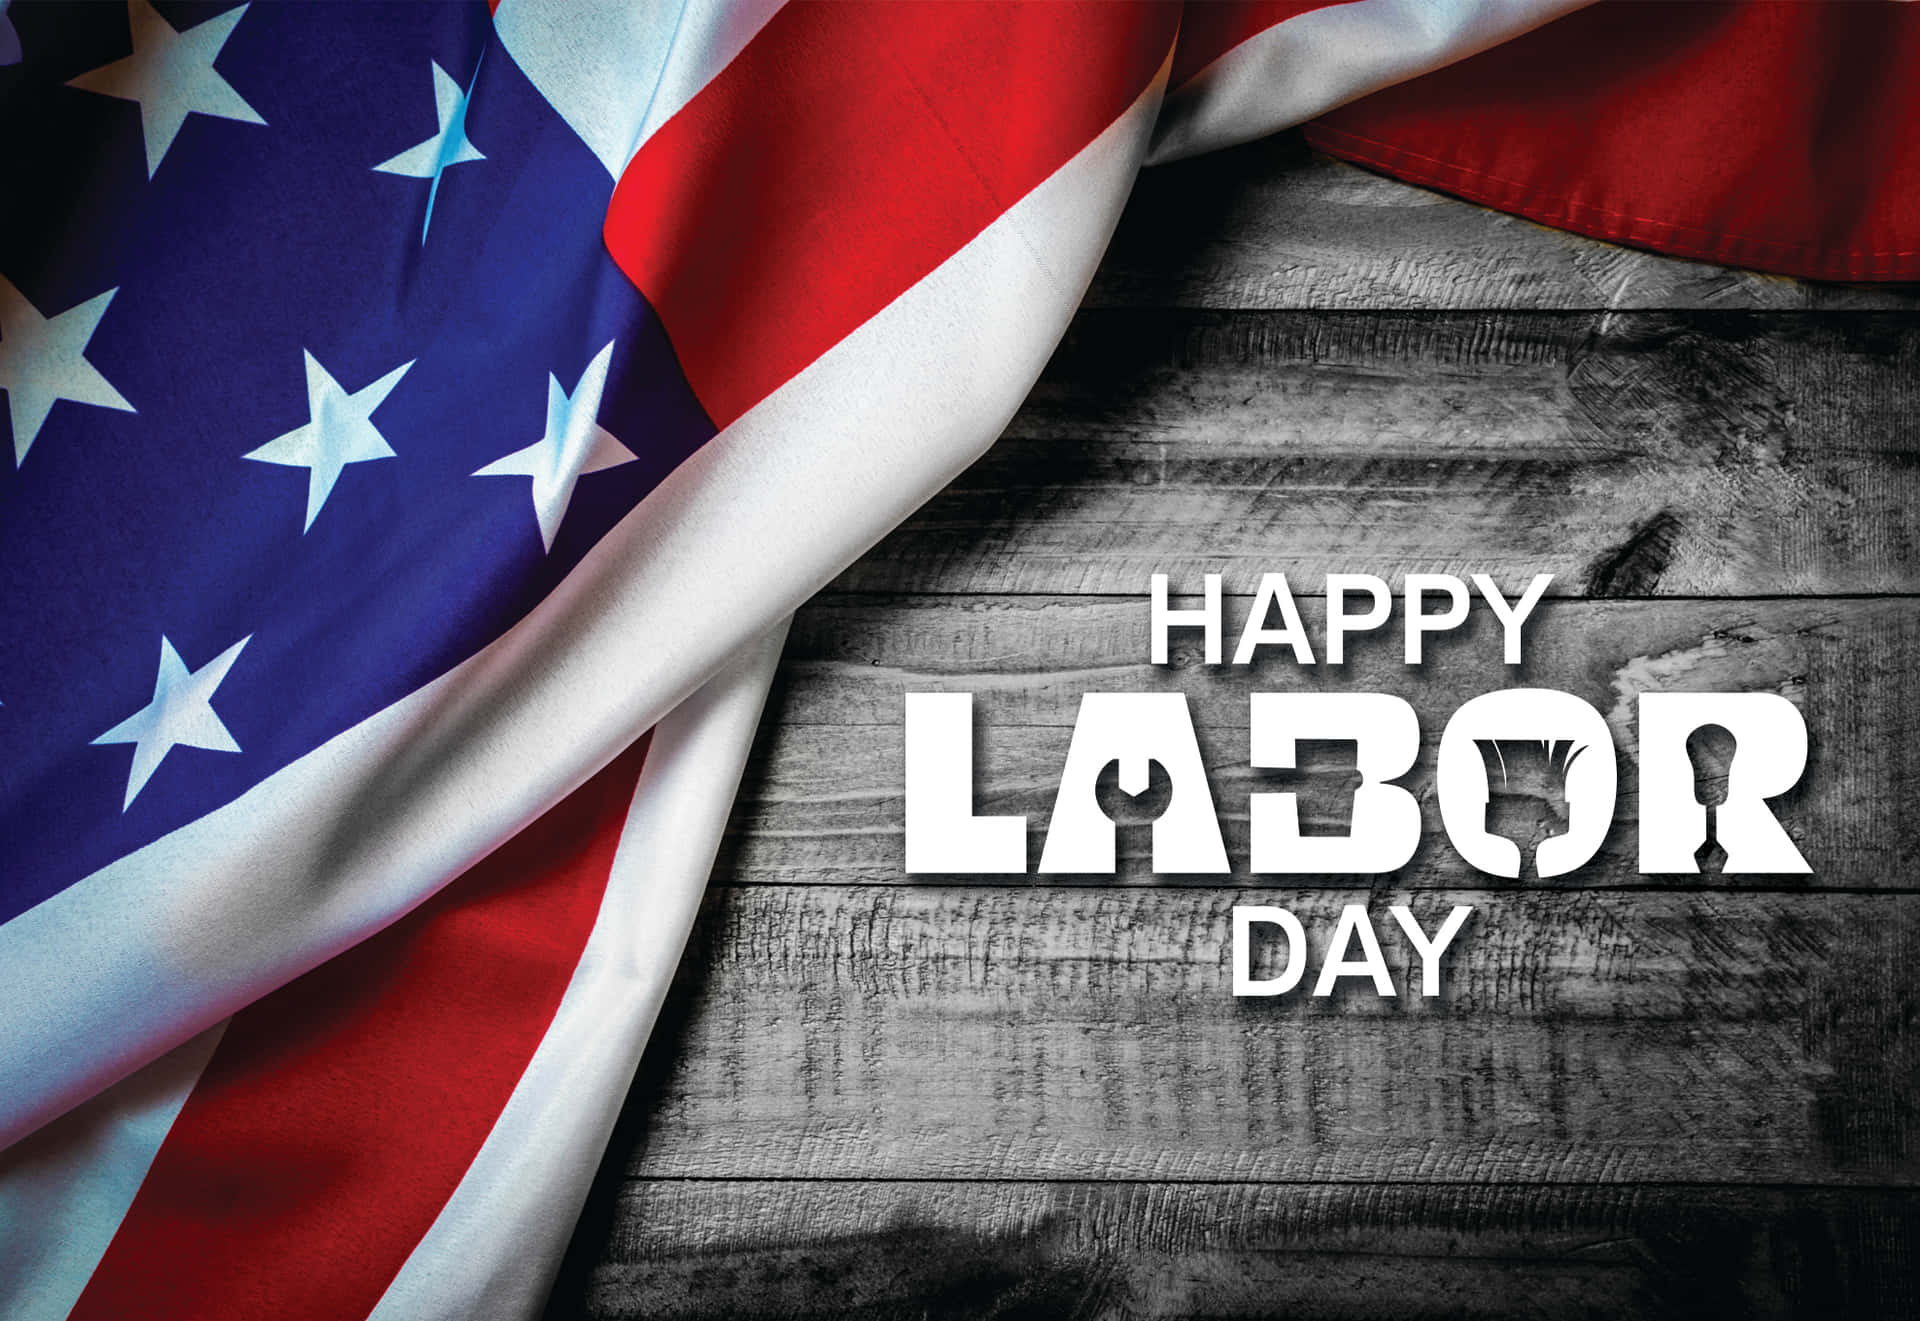 Celebrate Labor Day!